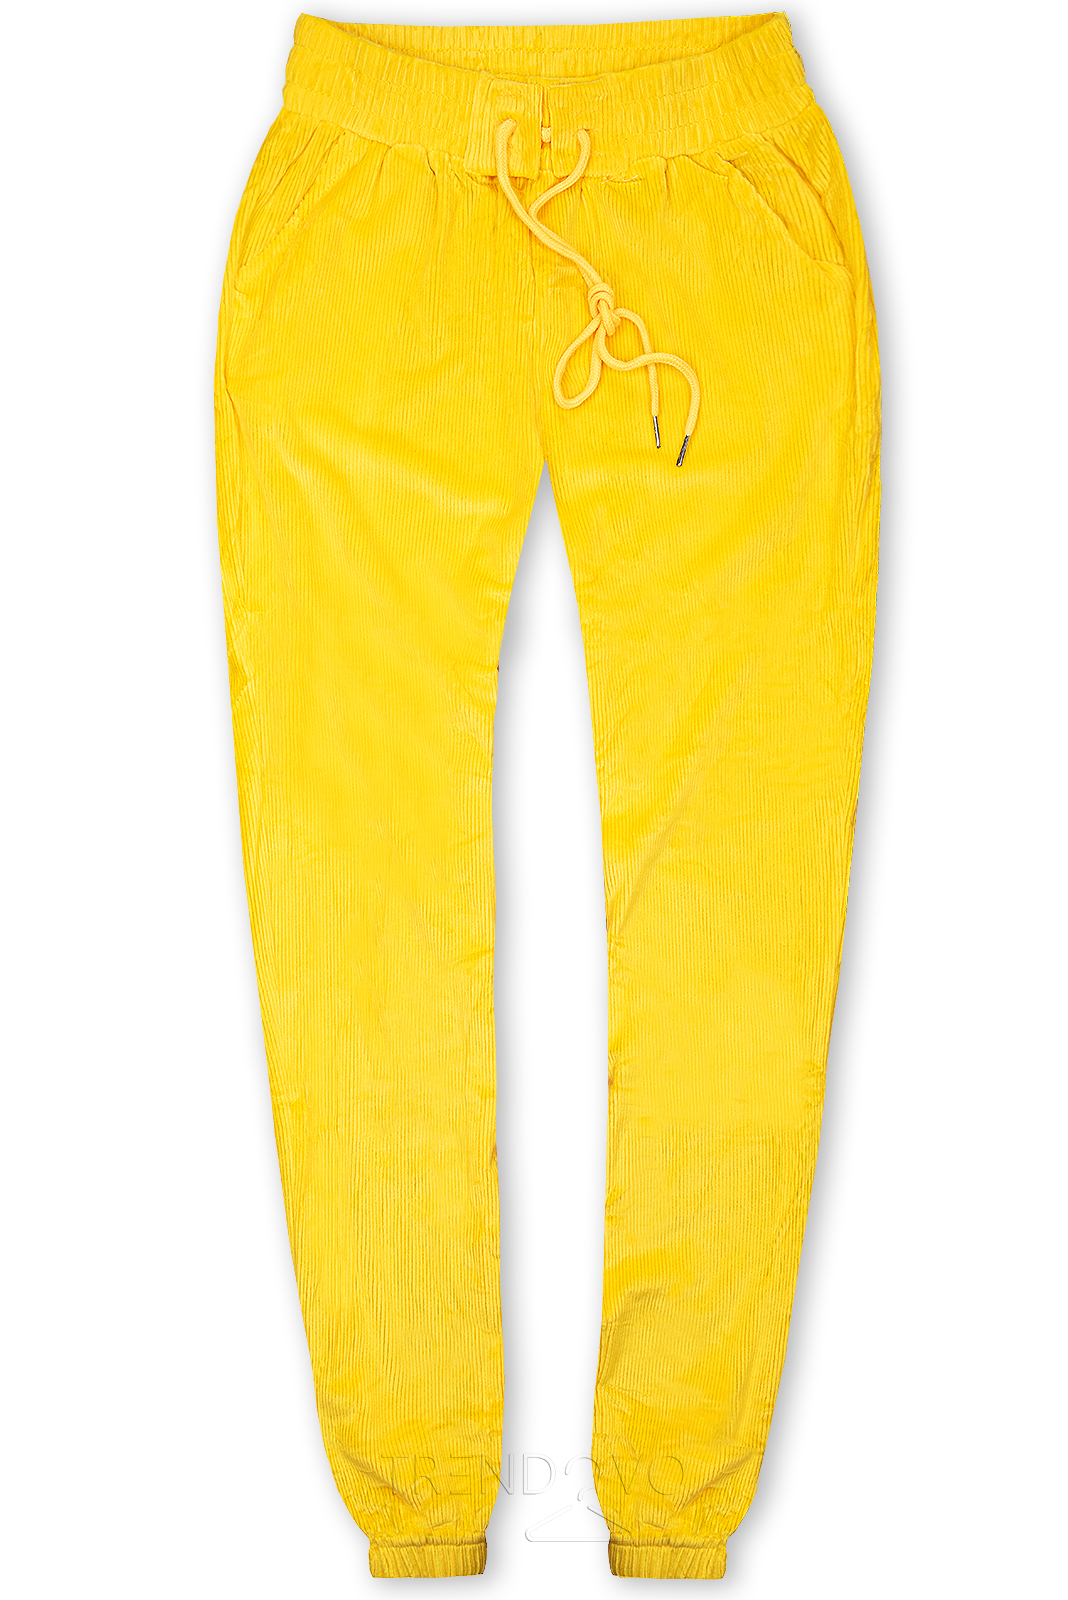 Žluté kalhoty se šněrováním v pase